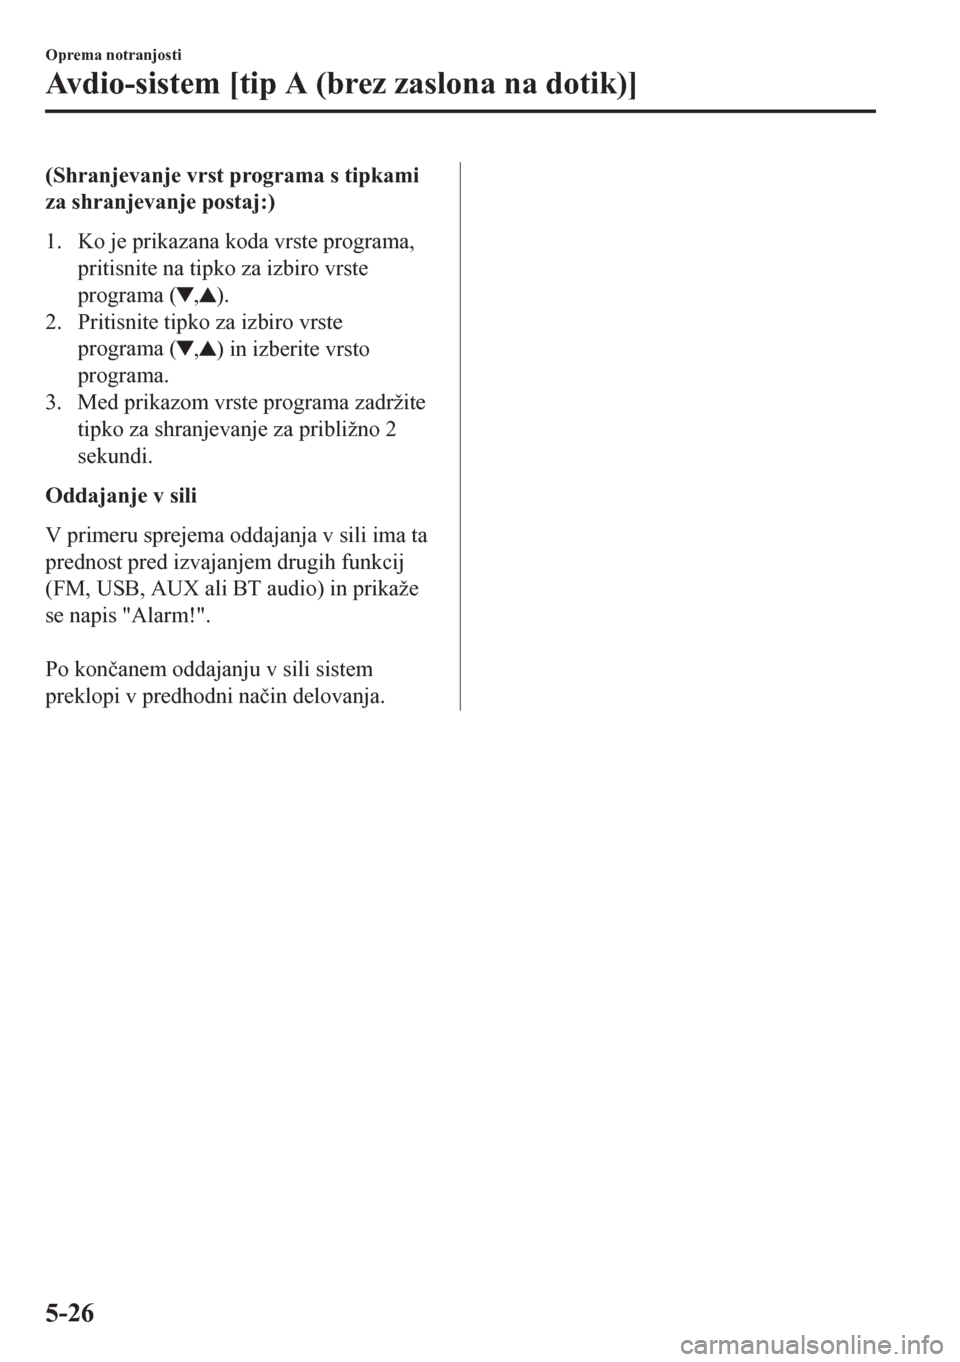 MAZDA MODEL CX-5 2018  Priročnik za lastnika (in Slovenian) (Shranjevanje vrst programa s tipkami
za shranjevanje postaj:)
1. Ko je prikazana koda vrste programa,
pritisnite na tipko za izbiro vrste
programa (
,).
2. Pritisnite tipko za izbiro vrste
programa (